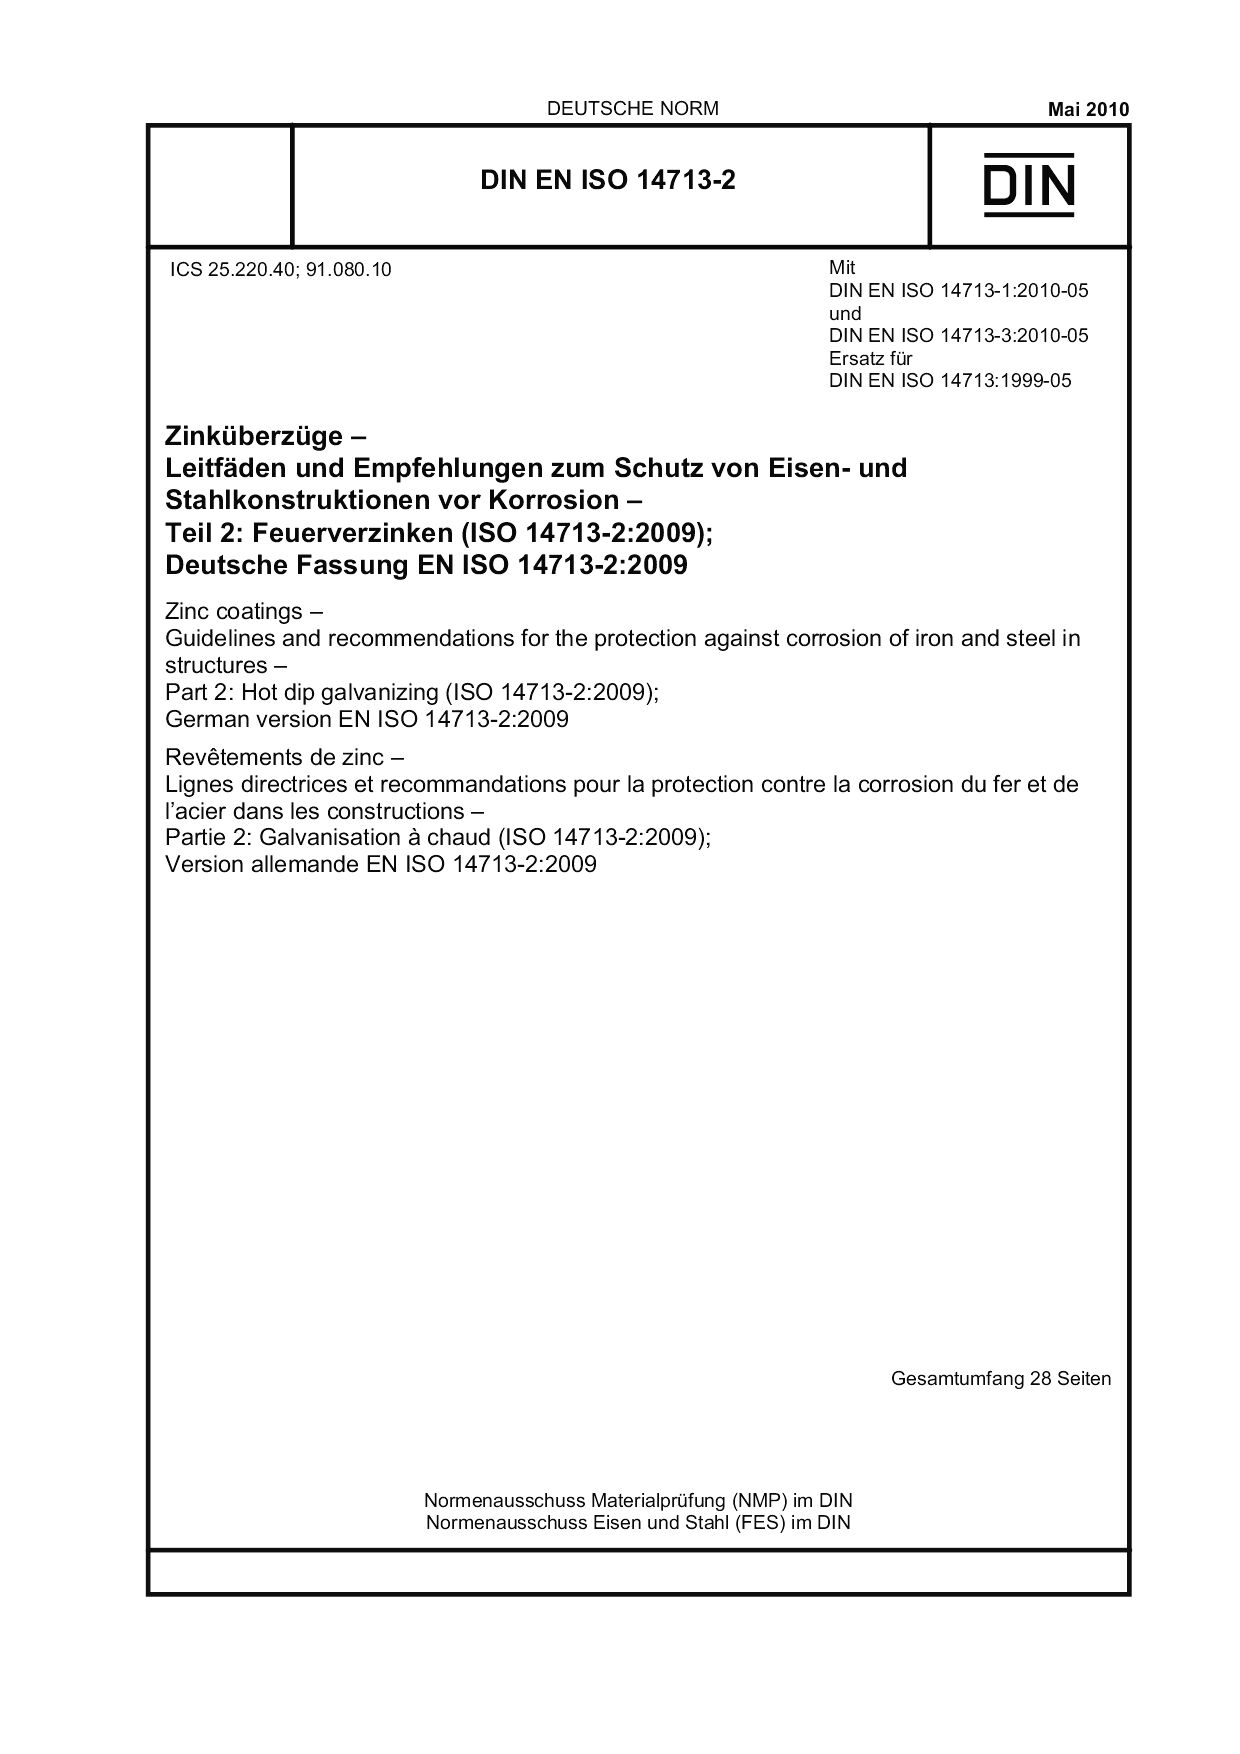 DIN EN ISO 14713-2:2010封面图